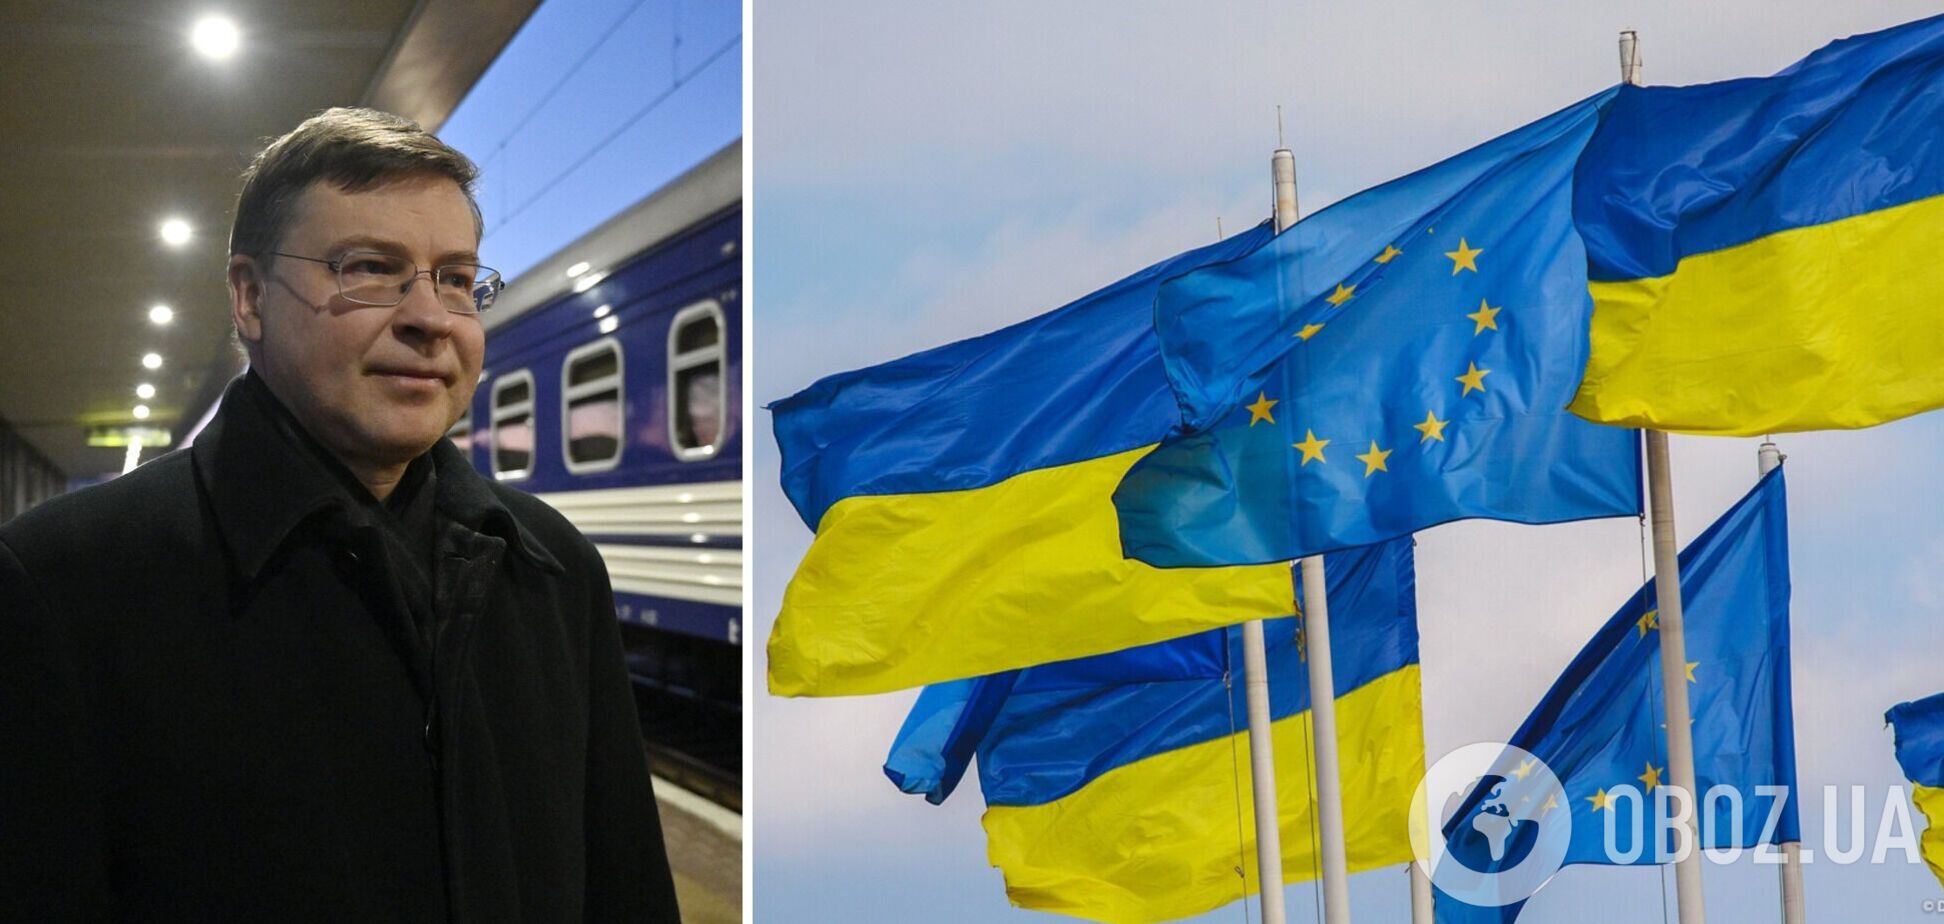 ’Украина уже сделала свой чёткий выбор’: в Киев прибыл с визитом вице-президент Еврокомиссии